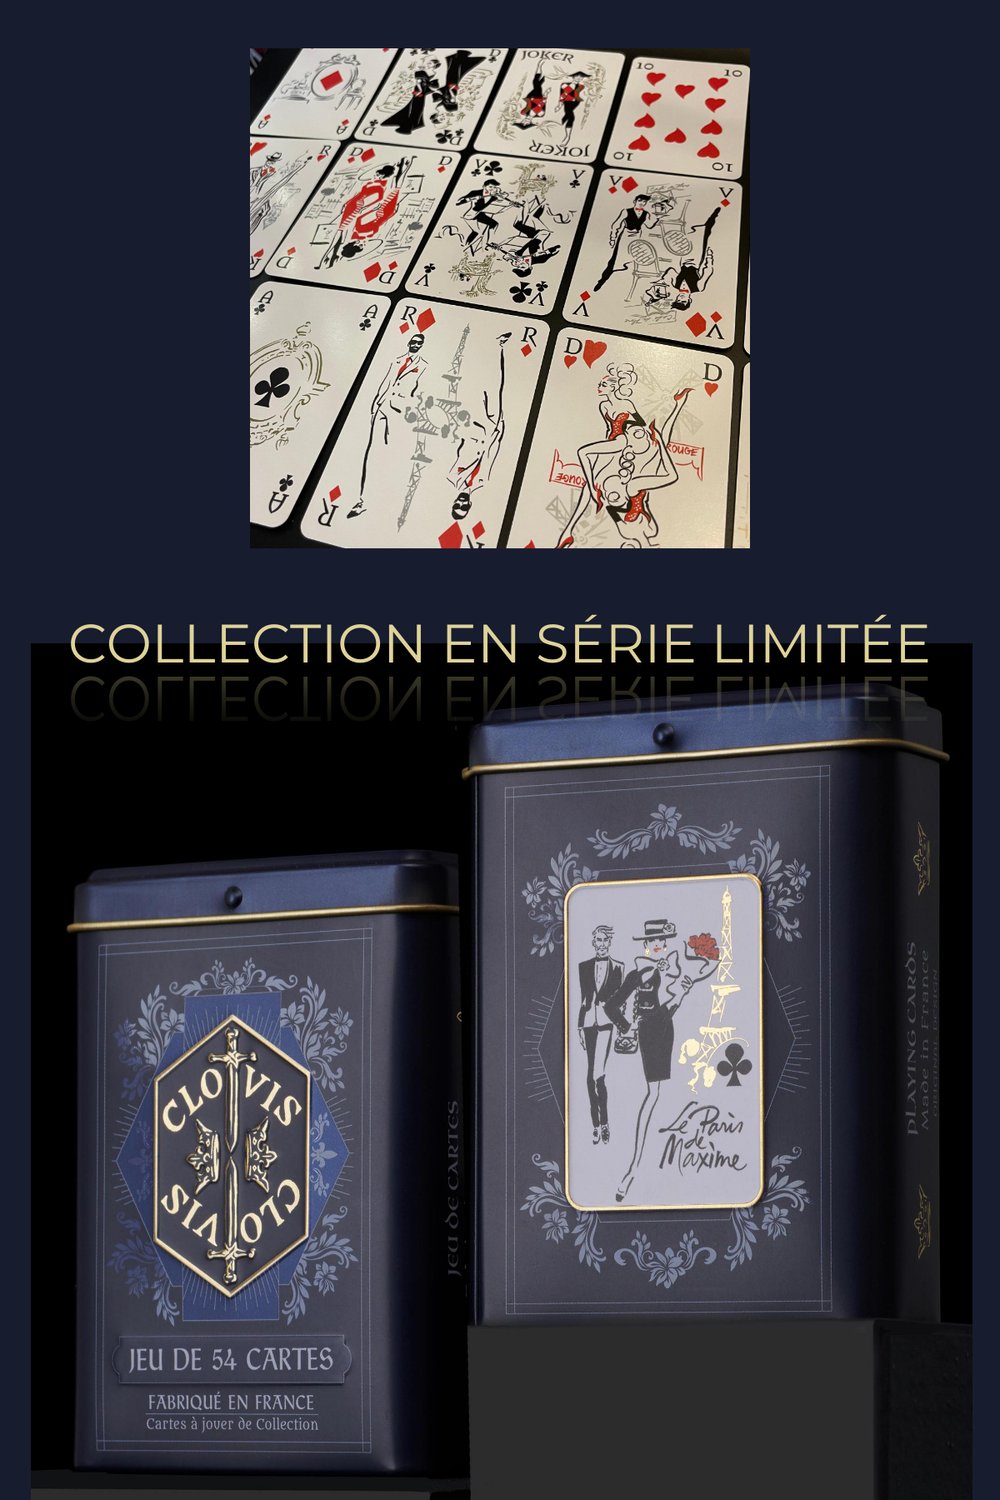 Cartes à jouer de collection, édition luxe en série limitée, fabriqué en  France, jeu de 54 cartes — CLOVIS